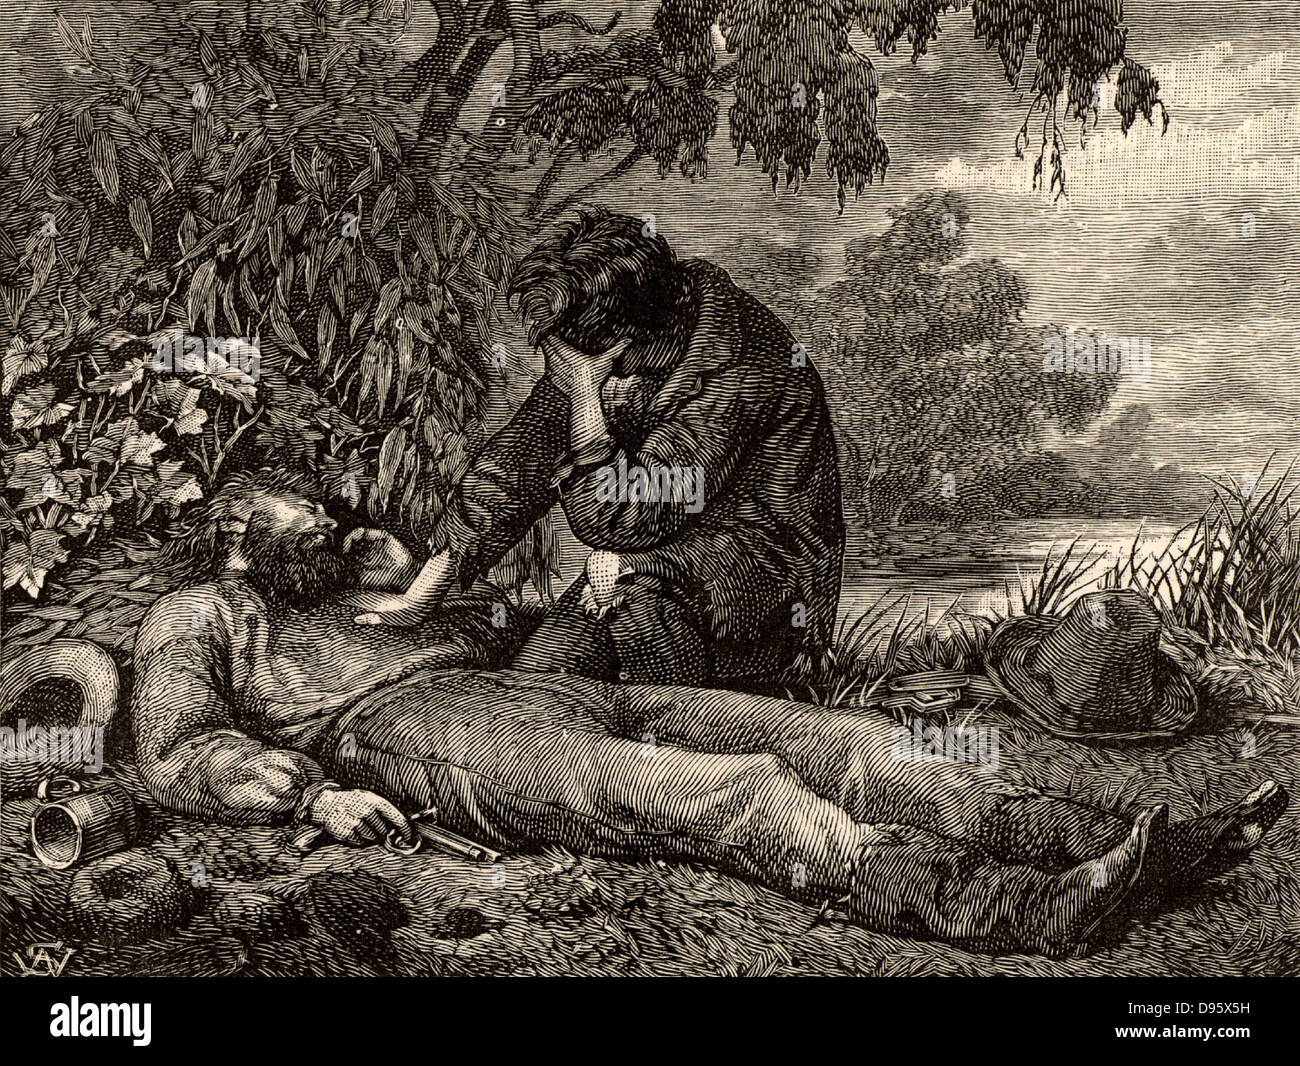 Burke et Wills expédition pour explorer l'intérieur de l'Australie (1860-1861). Mort de Robert O'Hara Burke (1820-1861) Explorateur irlandais et chef de l'expédition. John King (1838-1872) en prenant congé du corps de Burke. King a été le premier Européen à traverser l'Australie et de survivre. Burke et Wills sont morts de faim, alors que le roi a été trouvé par friendly indigènes et soignés jusqu'à ce qu'une équipe de sauvetage est arrivé. Gravure tirée de 'héros de la Grande-Bretagne et de la paix et de la guerre' par Edwin Hodder (Londres, 1880). Banque D'Images